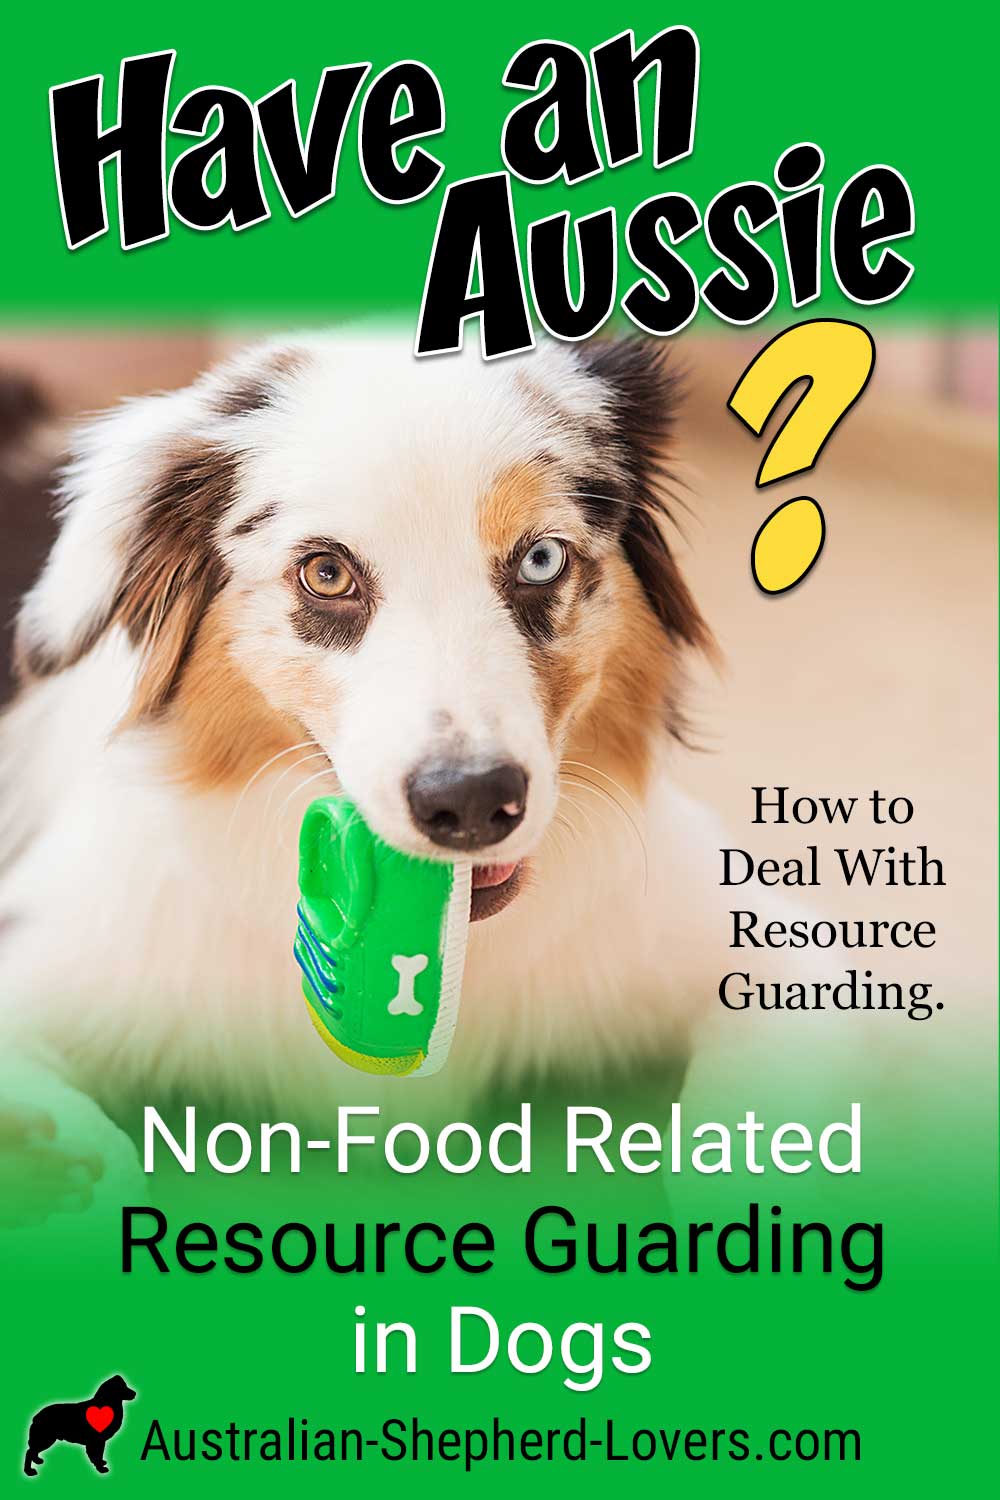 https://www.australian-shepherd-lovers.com/image-files/resource-guarding-in-dogs-pnt-01.jpg